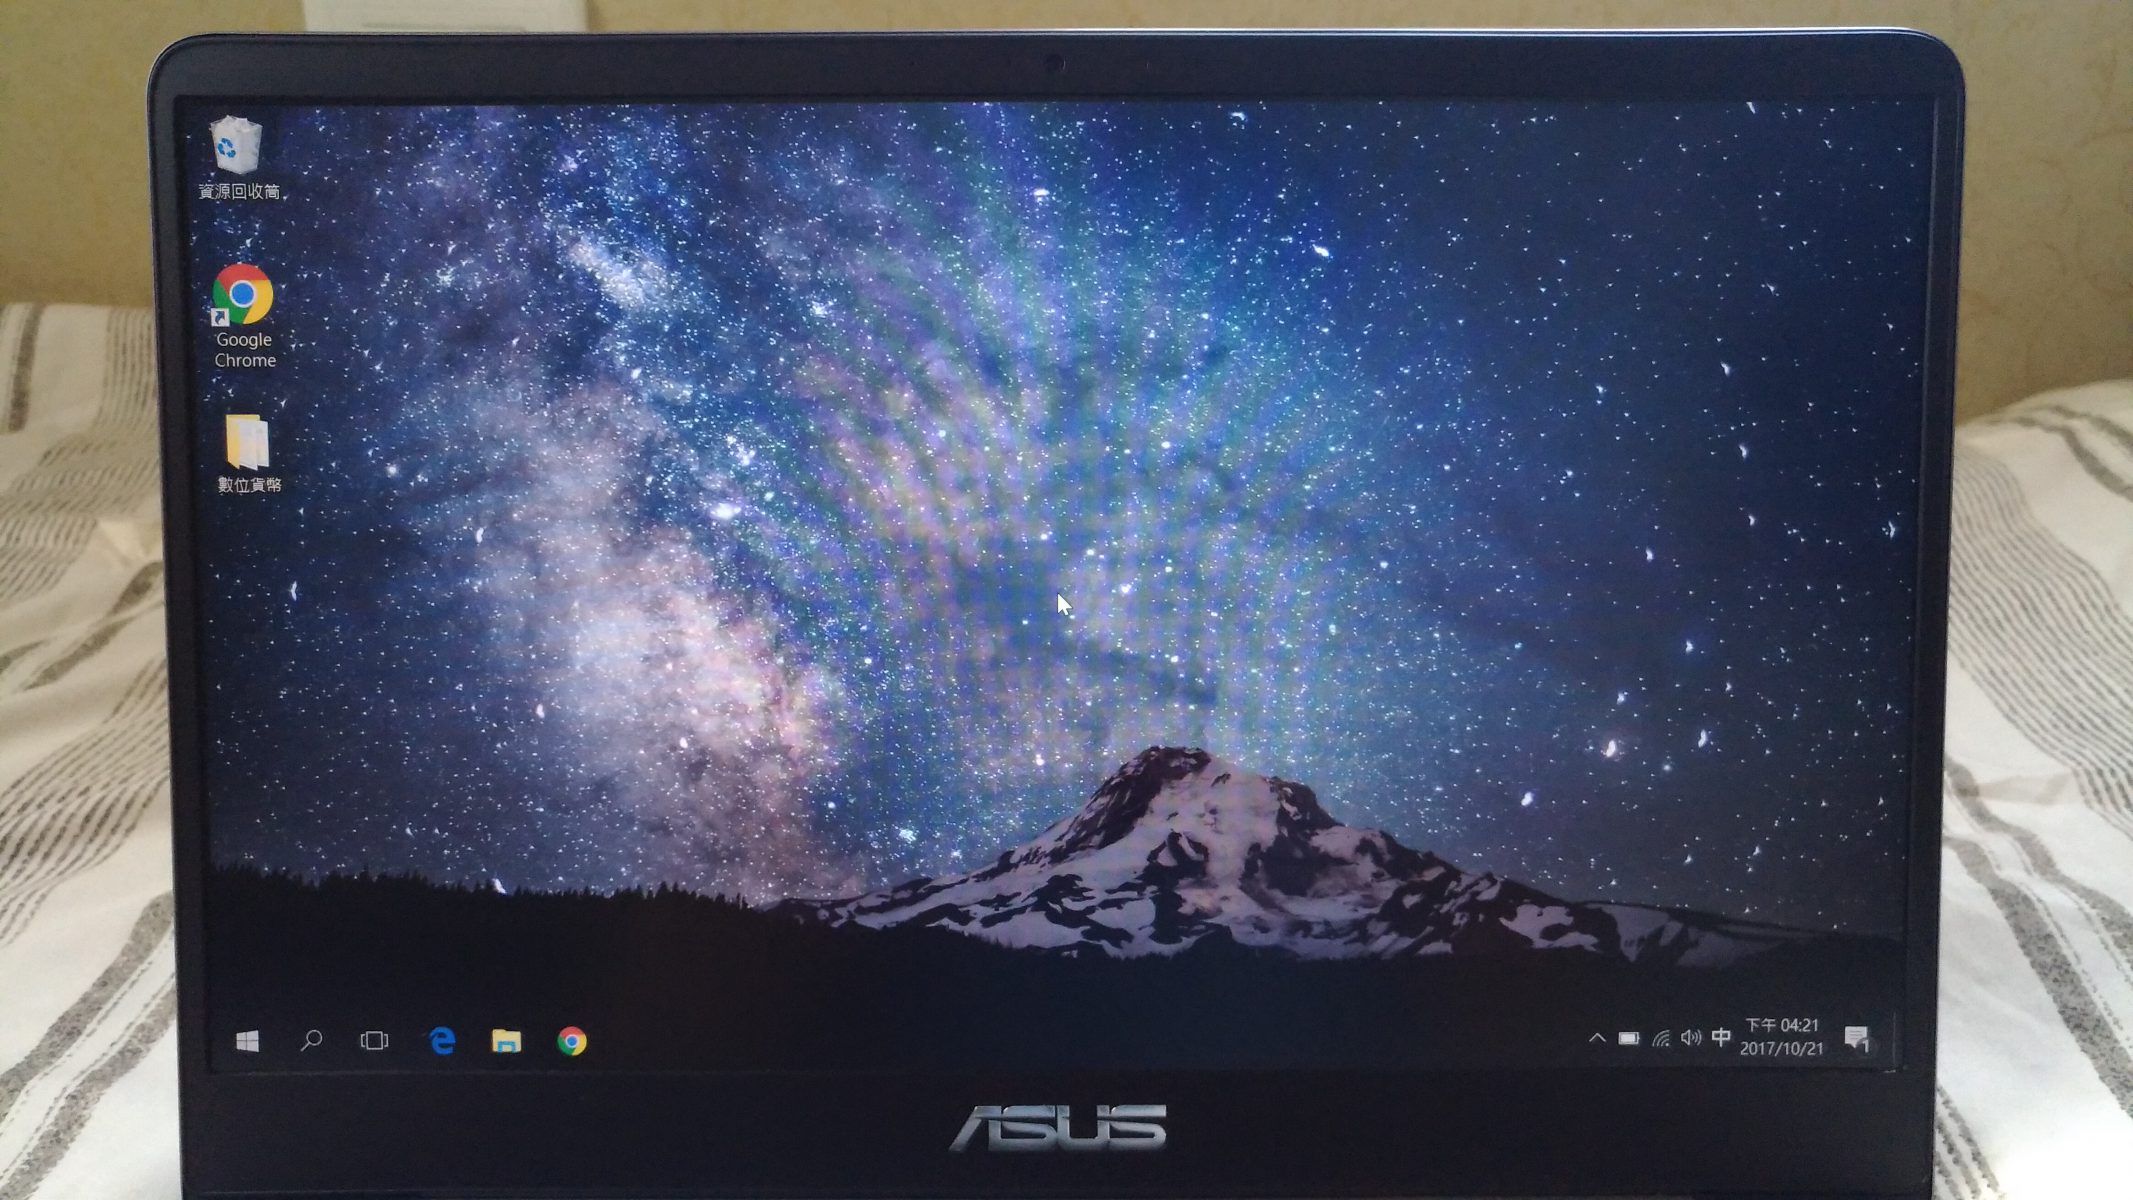 P 20171021 162110 - [開箱] Asus Zenbook UX410UQ 輕便與效能兼顧的絕美窄邊框筆電